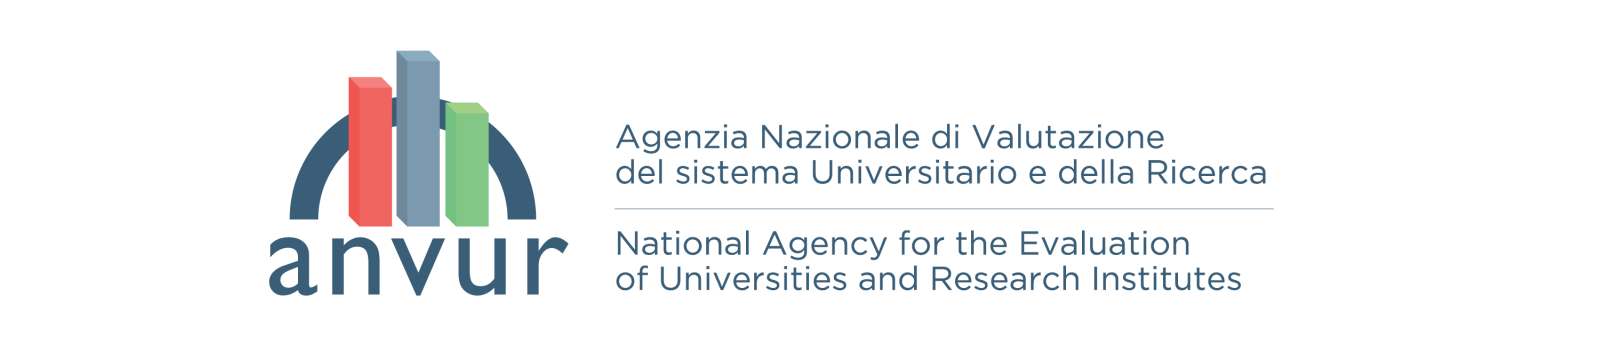 Verso la riforma del sistema di valutazione della ricerca in Italia